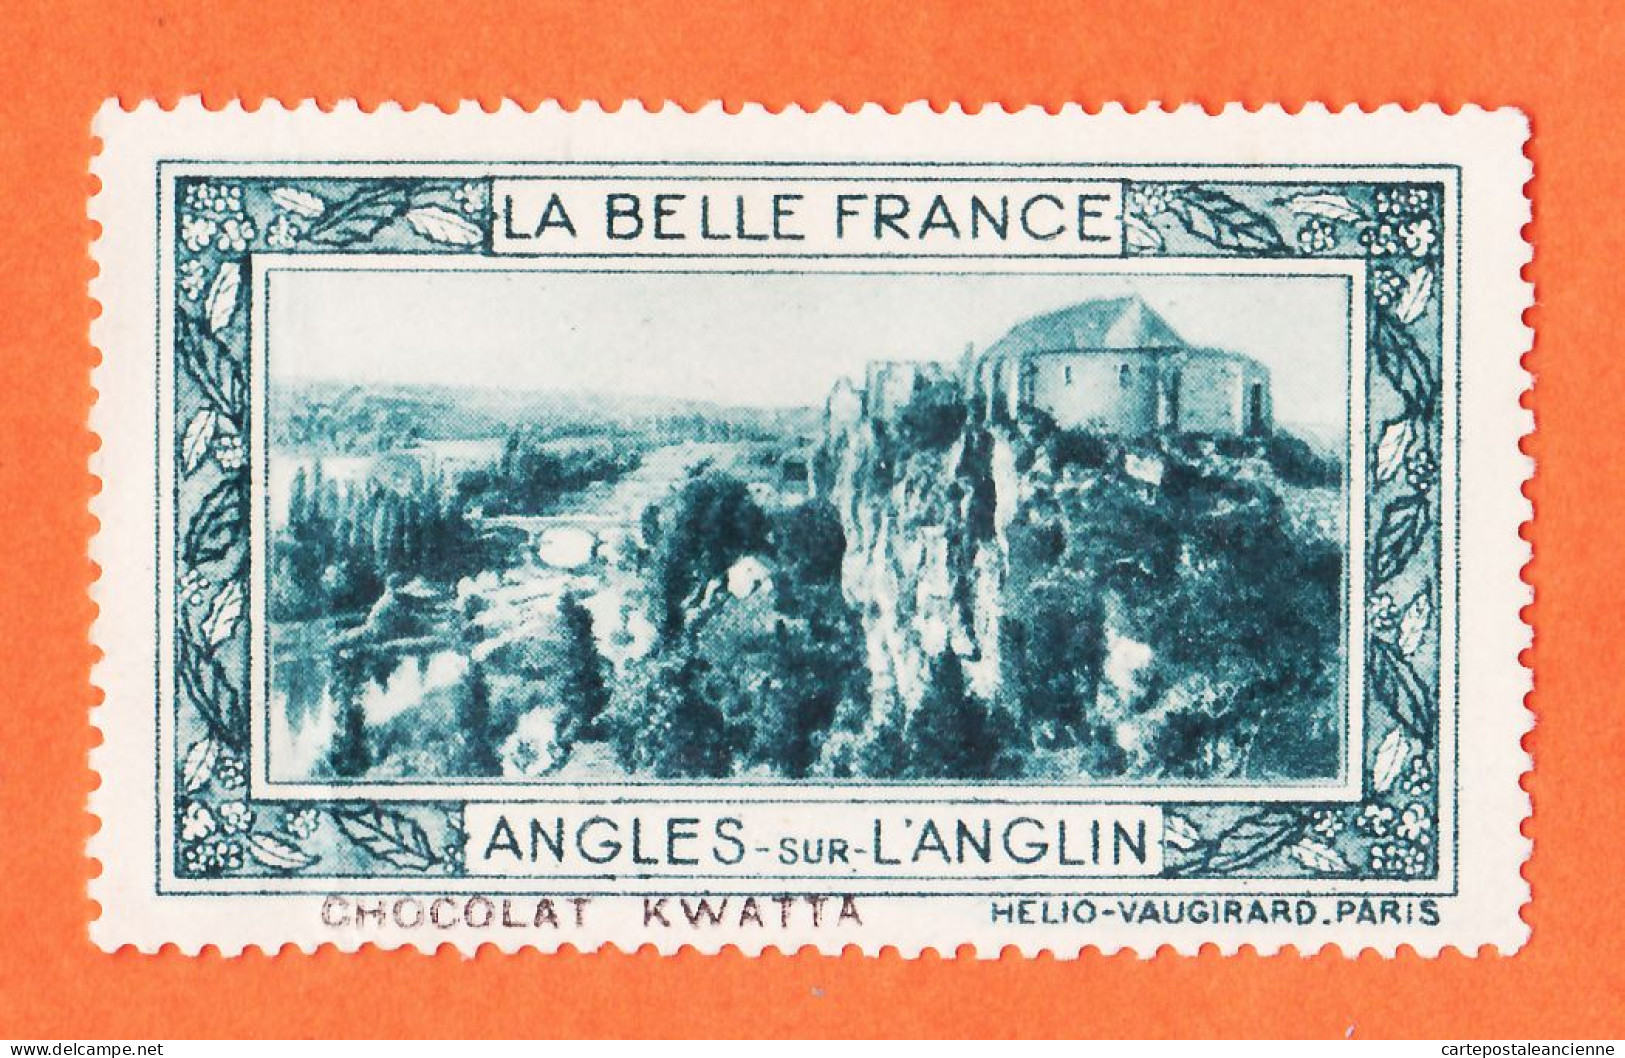 36976 / ⭐ ◉ LANGLES-sur-L'ANGLIN 86-Yonne Pub Chocolat KWATTA Vignette Collection BELLE FRANCE HELIO-VAUGIRARD - Tourisme (Vignettes)